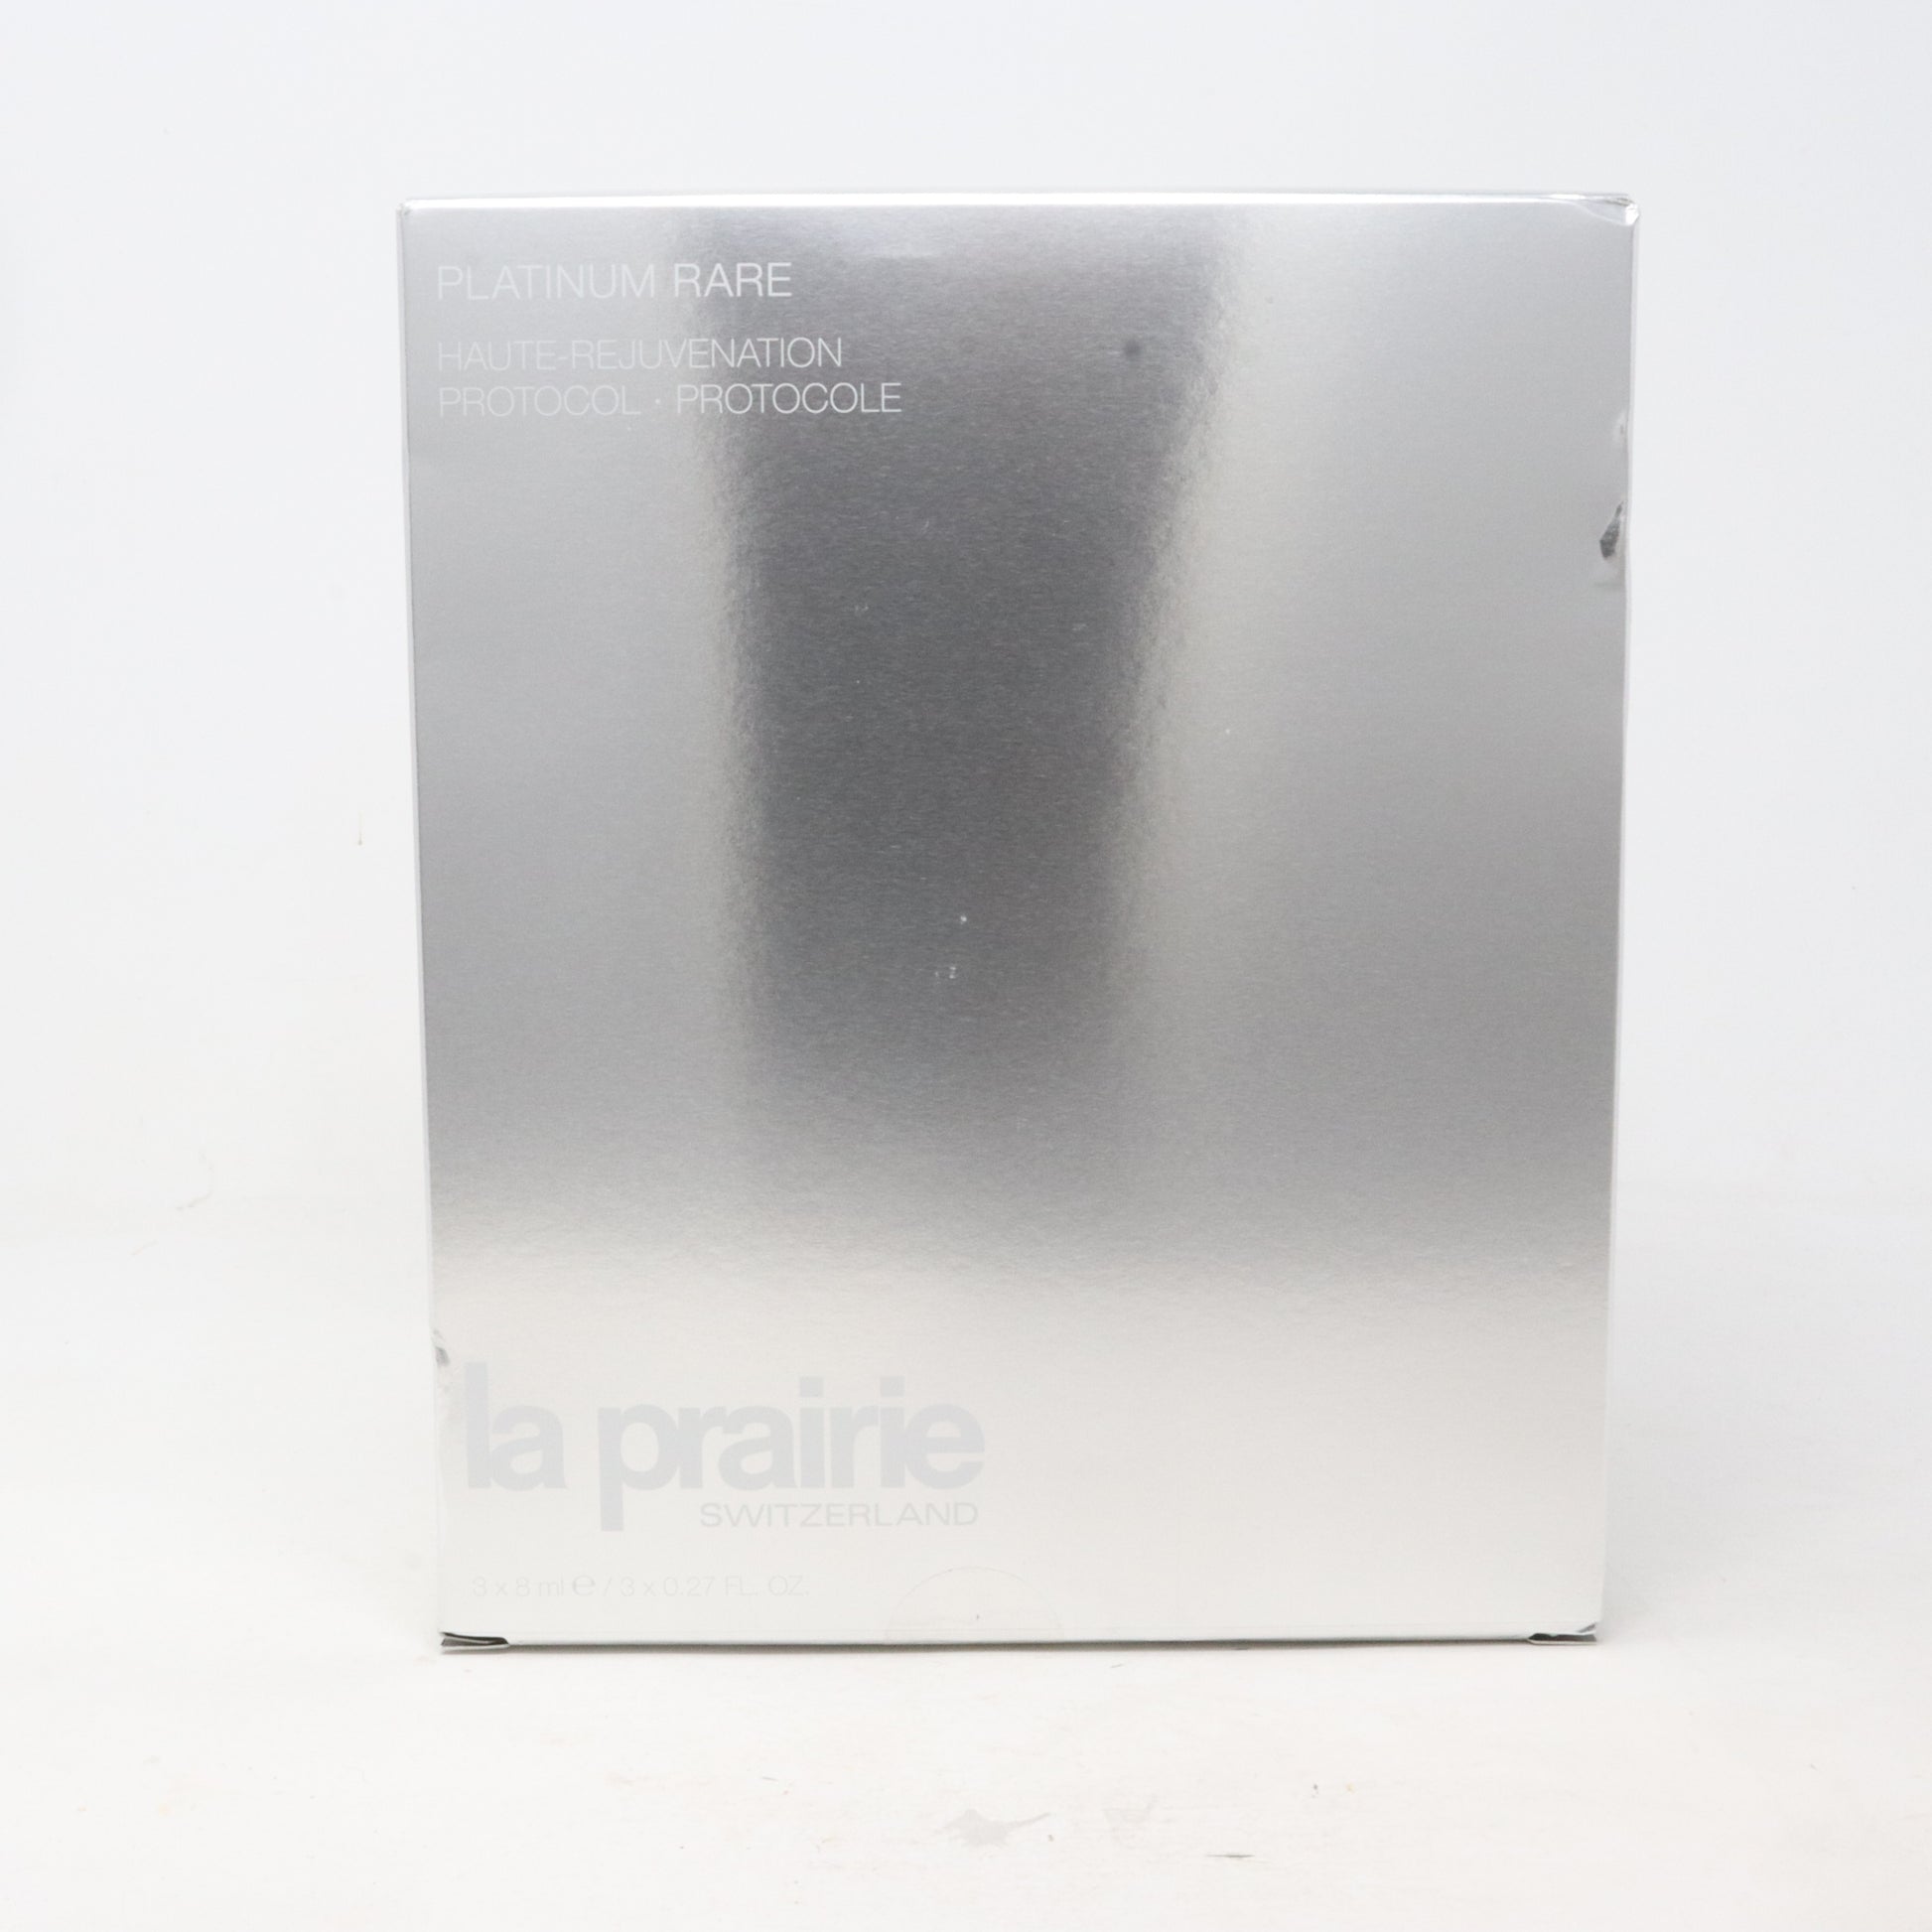 Platinum Rare Haute- Rejuvenation Protocol 3 x 8 ml